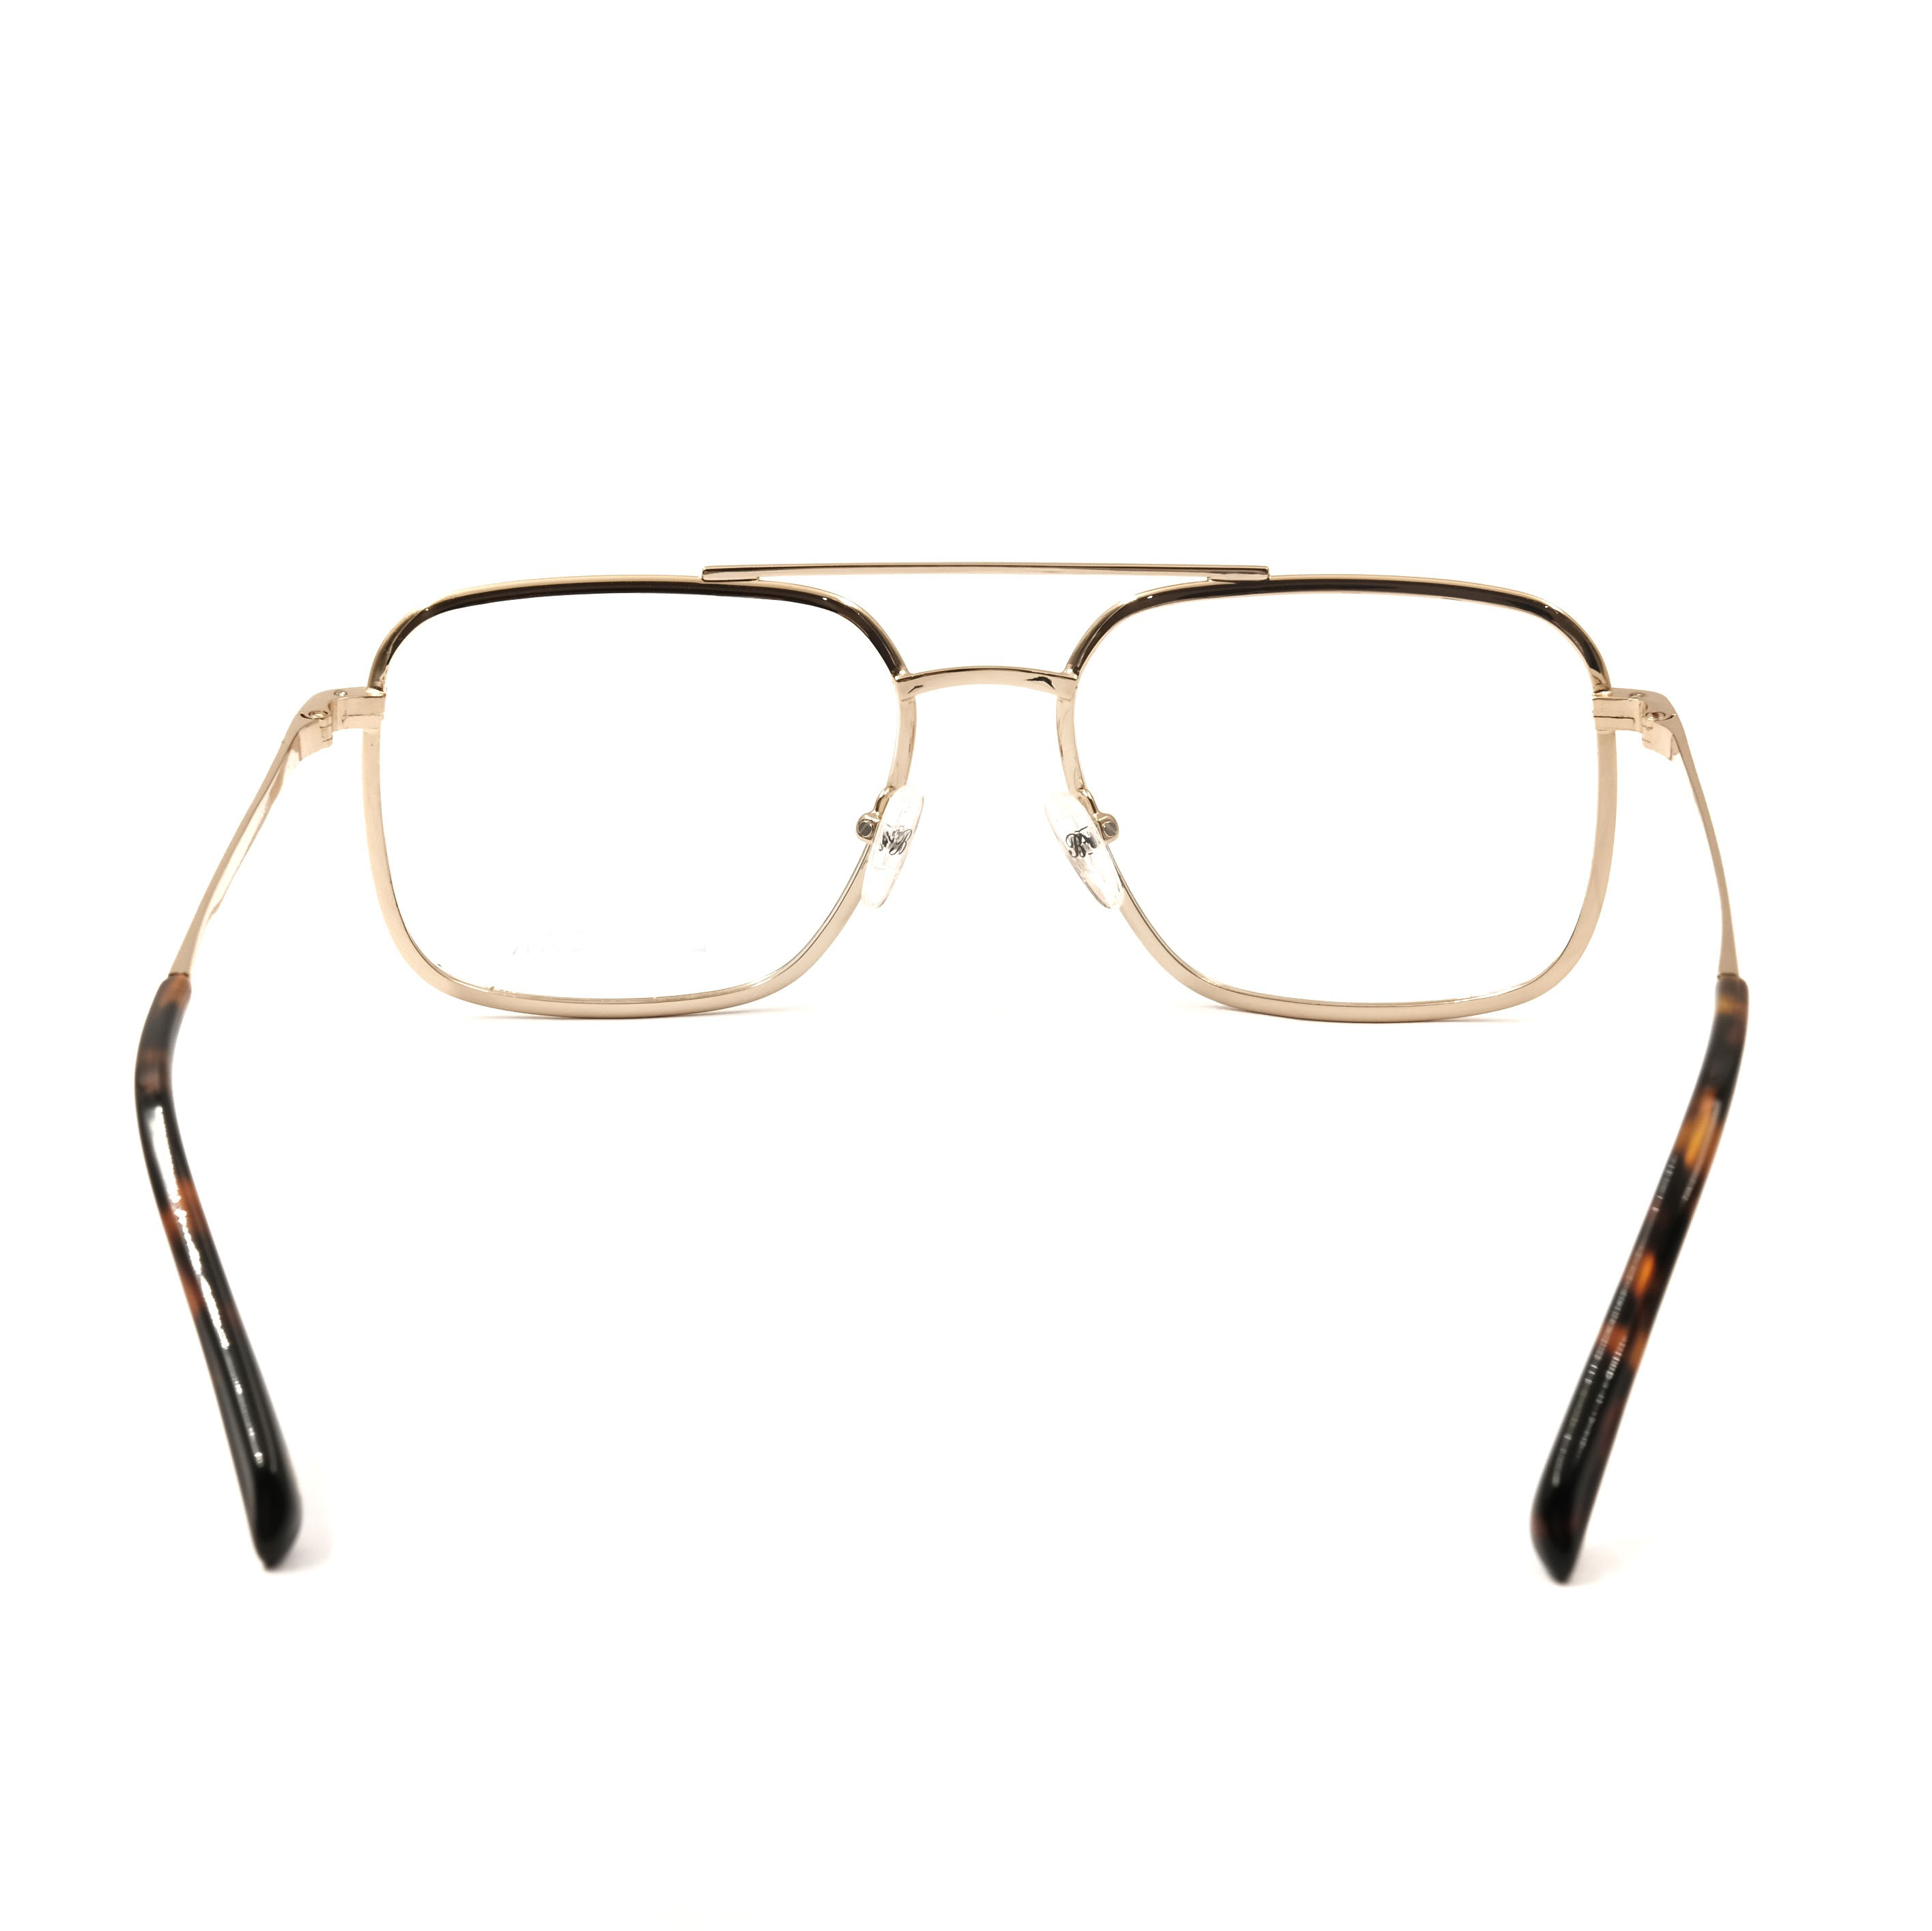 Anti Blue Light Glasses River Eyeglasses Frames Ultralight Round Full Frame Optical Glasses Spectacle Frames